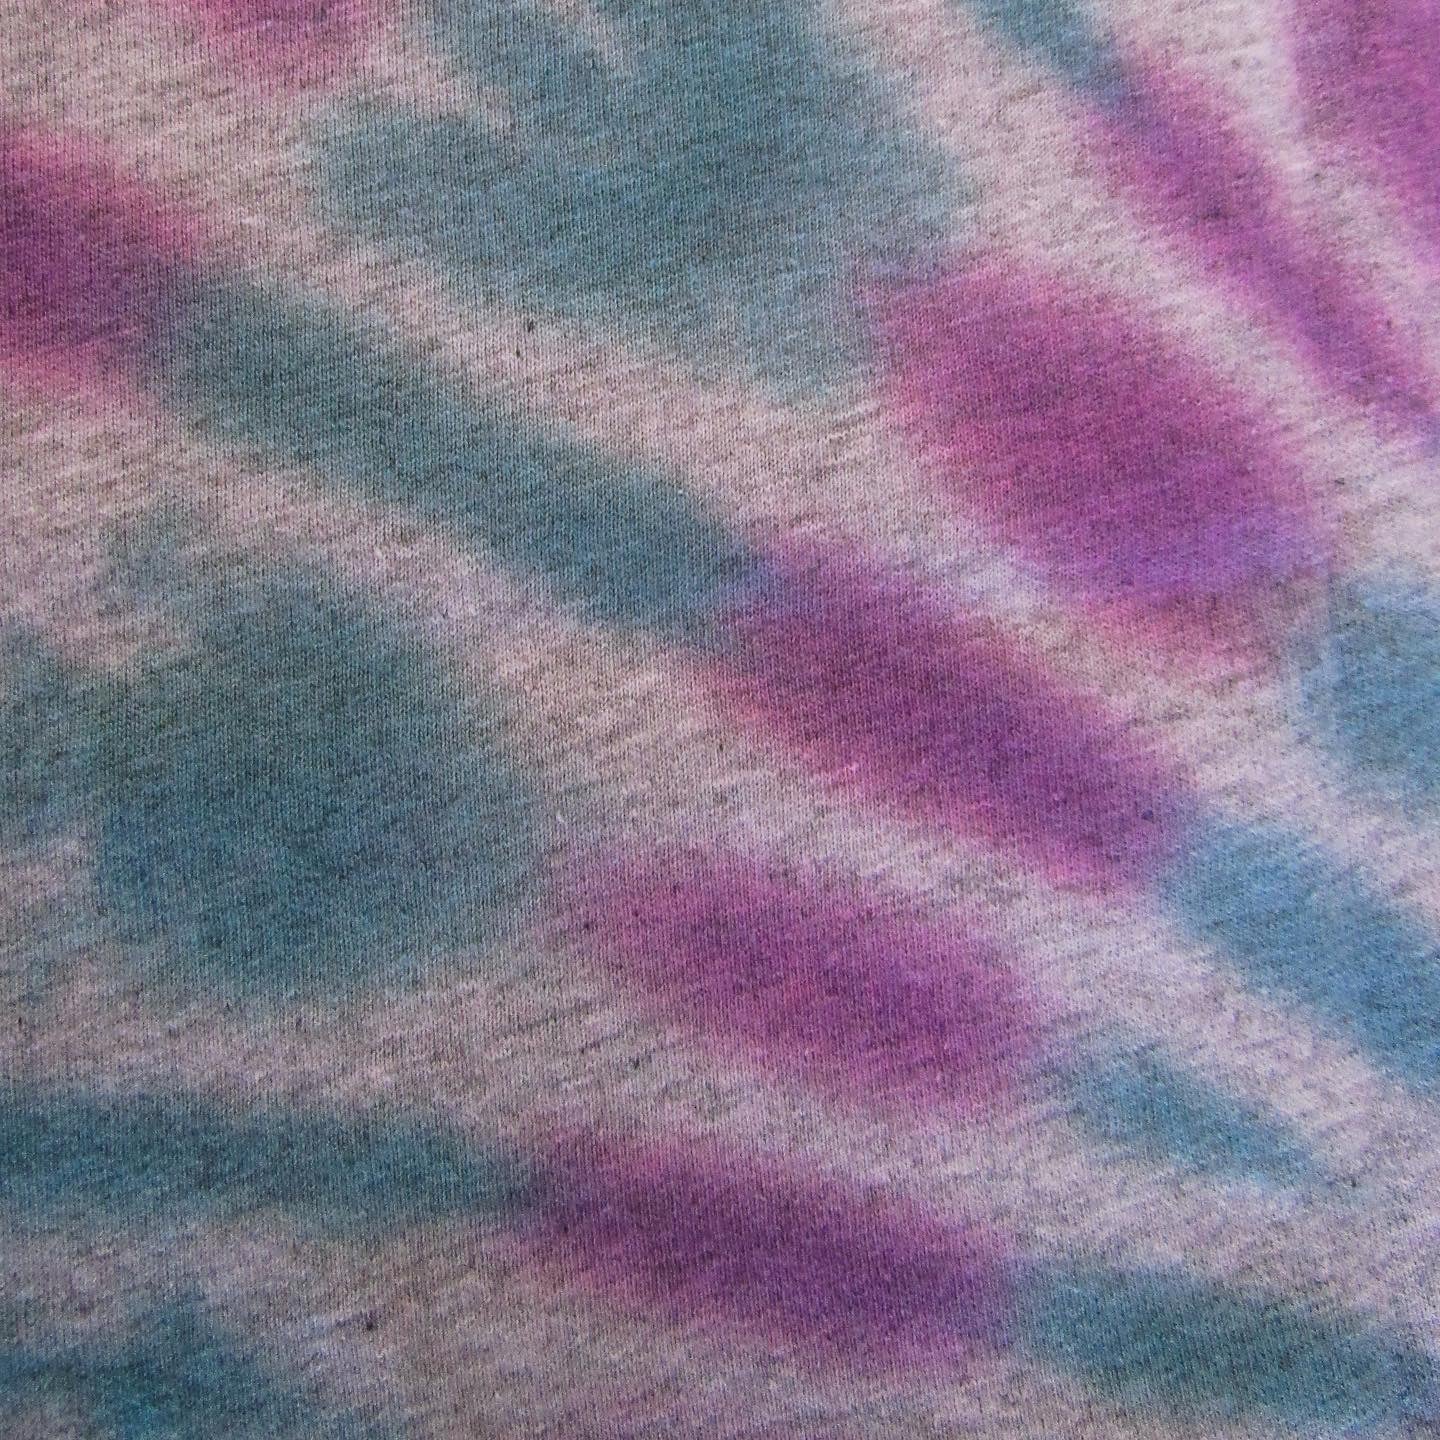 Blue & Purple Sunburst Tie Dye On A Grey T Shirt